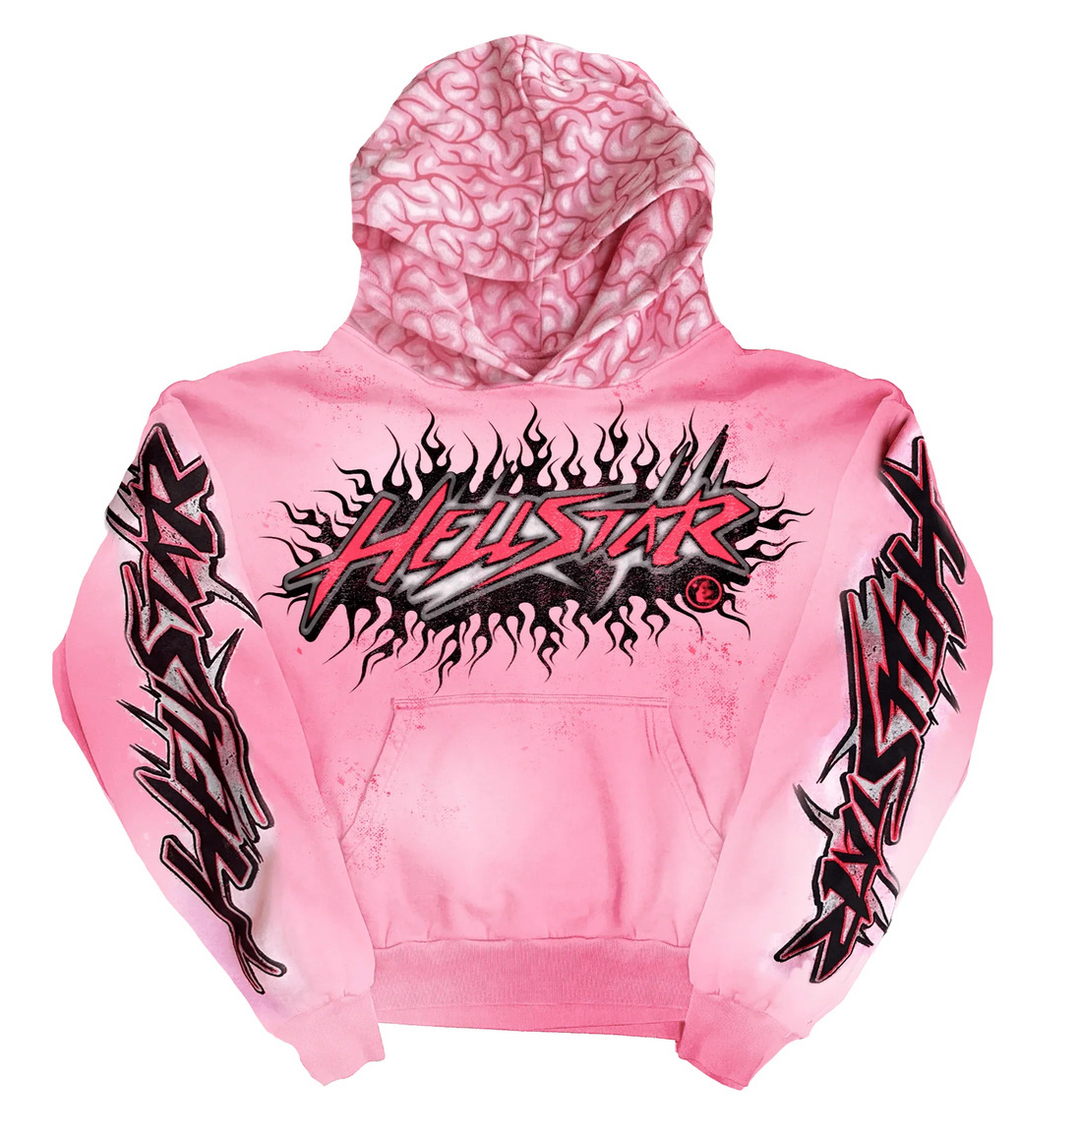 Hellstar 'Brainwashed' Pink Brain Hoodie